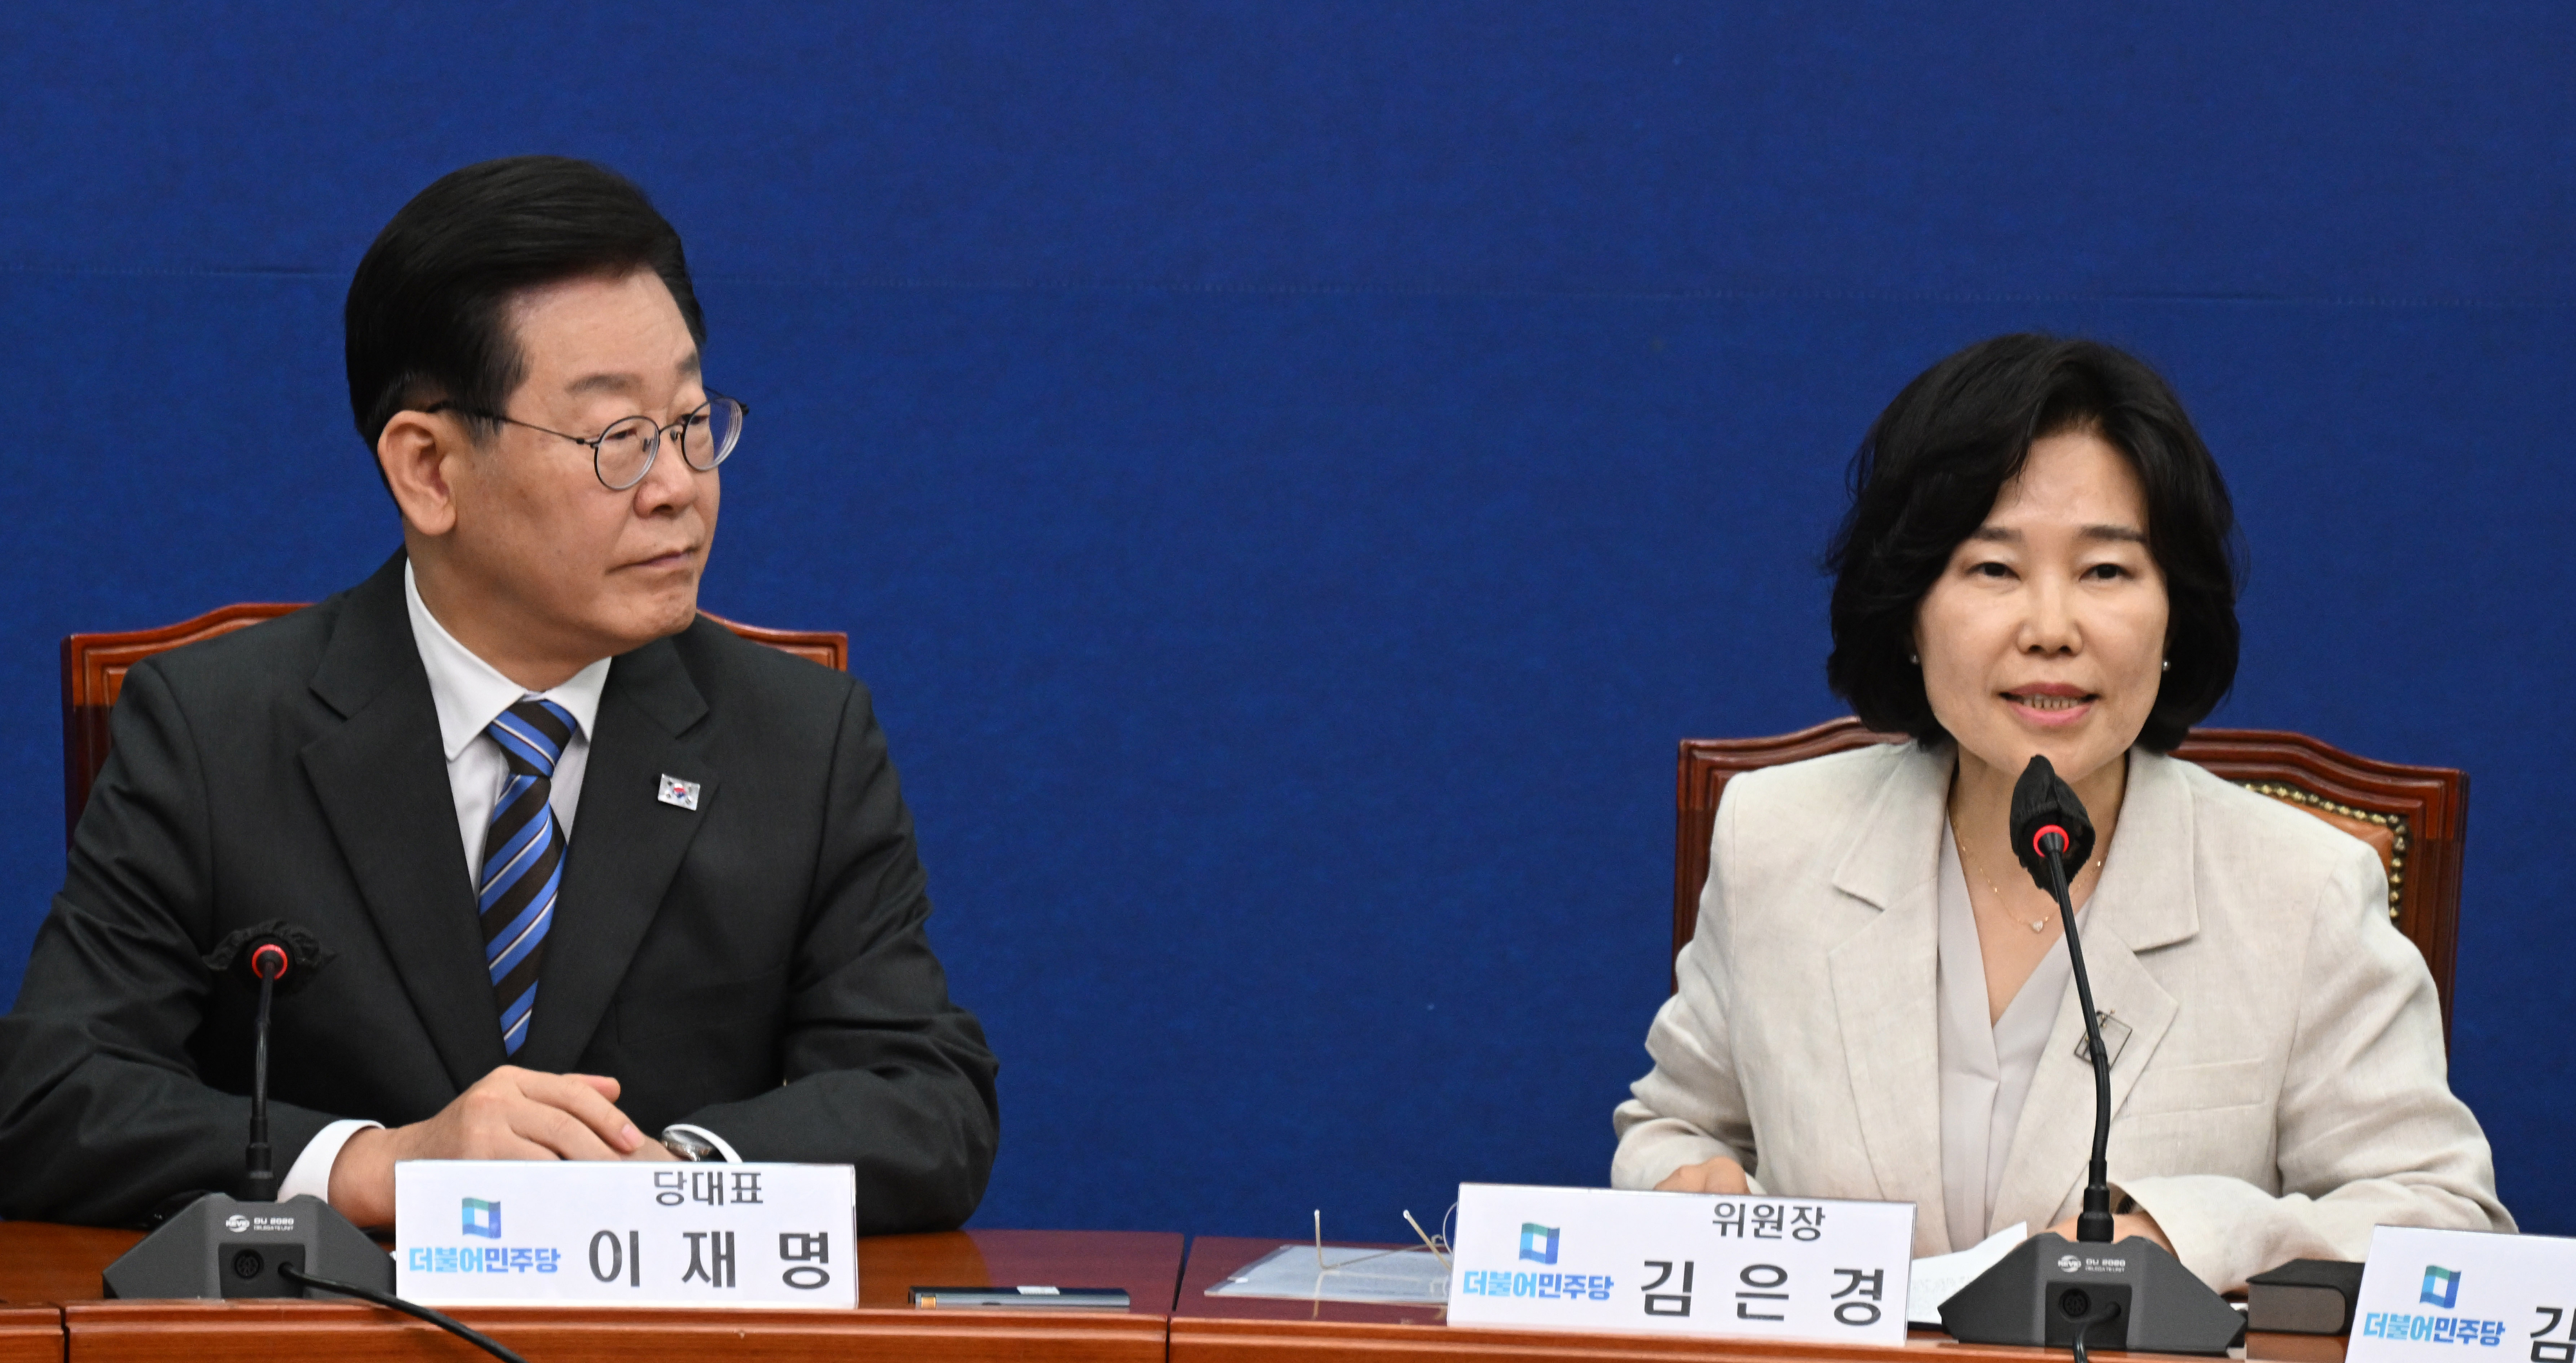 20일 국회에서 열린 민주당 혁신기구 1차 회의에서 김은경 위원장이 발언하고 있다. 안주영 전문기자